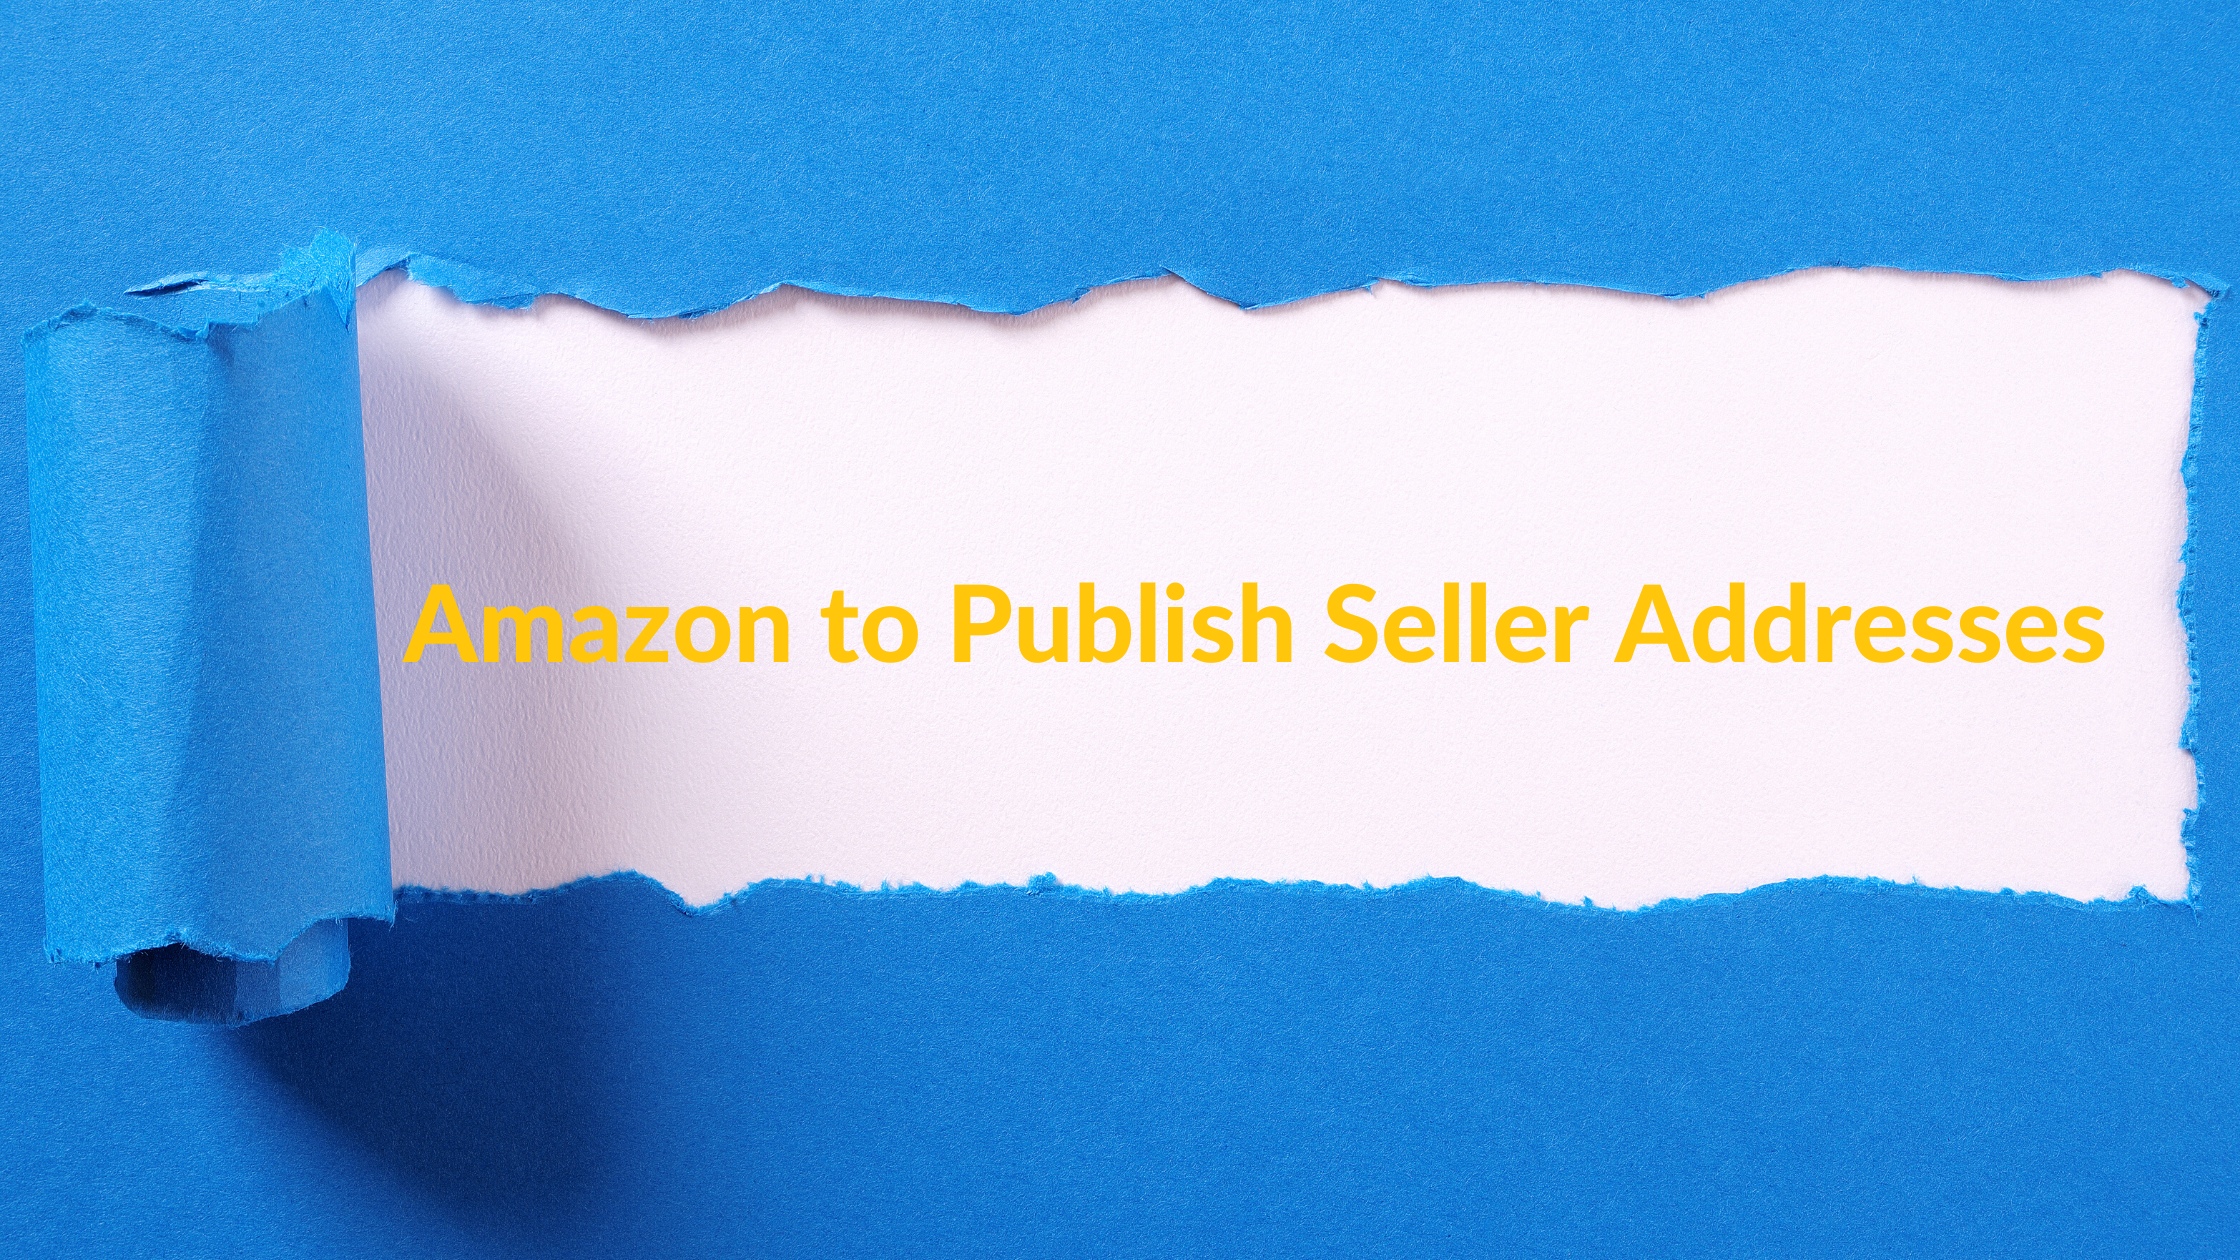 Blog - Amazon to Publish Seller Addresses